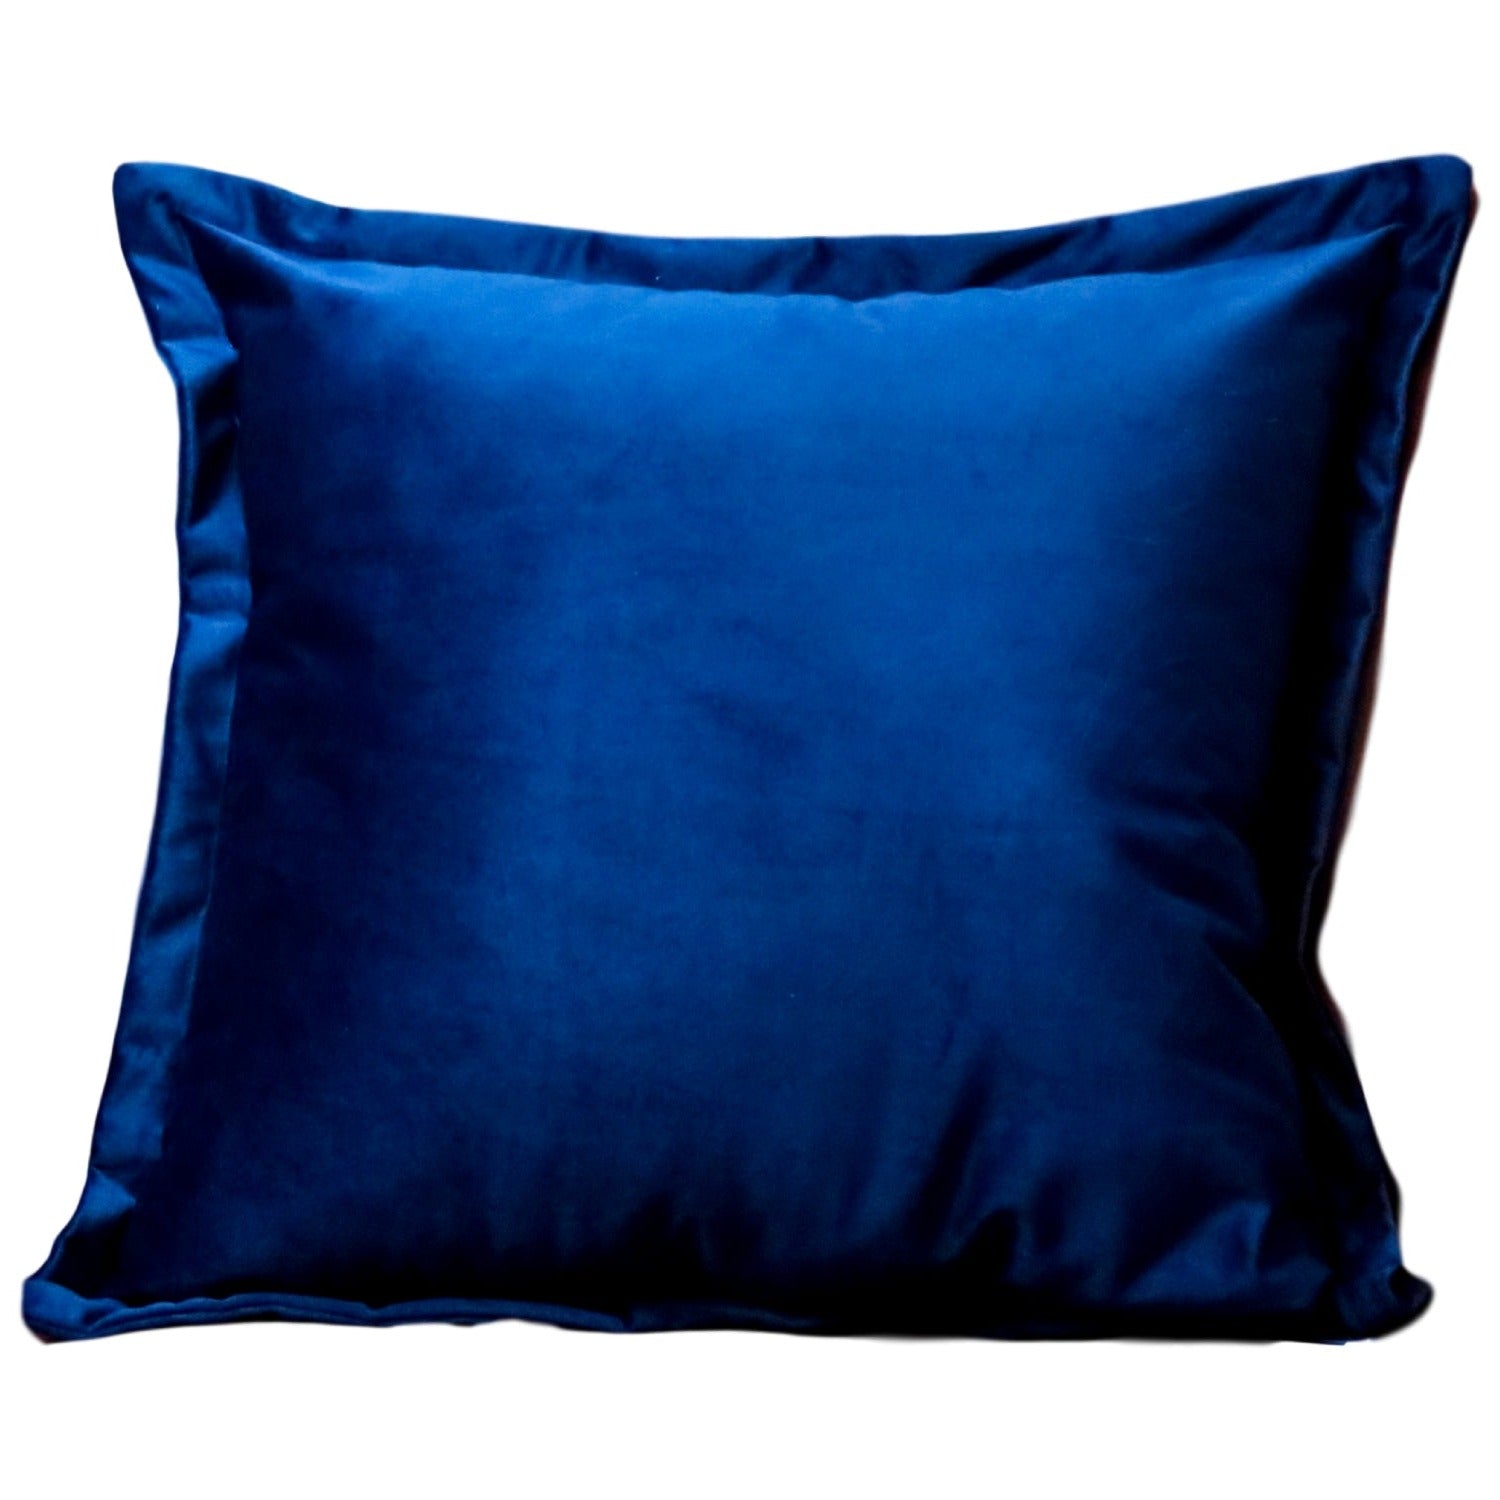 Navy blue velvet cushion cover by Native